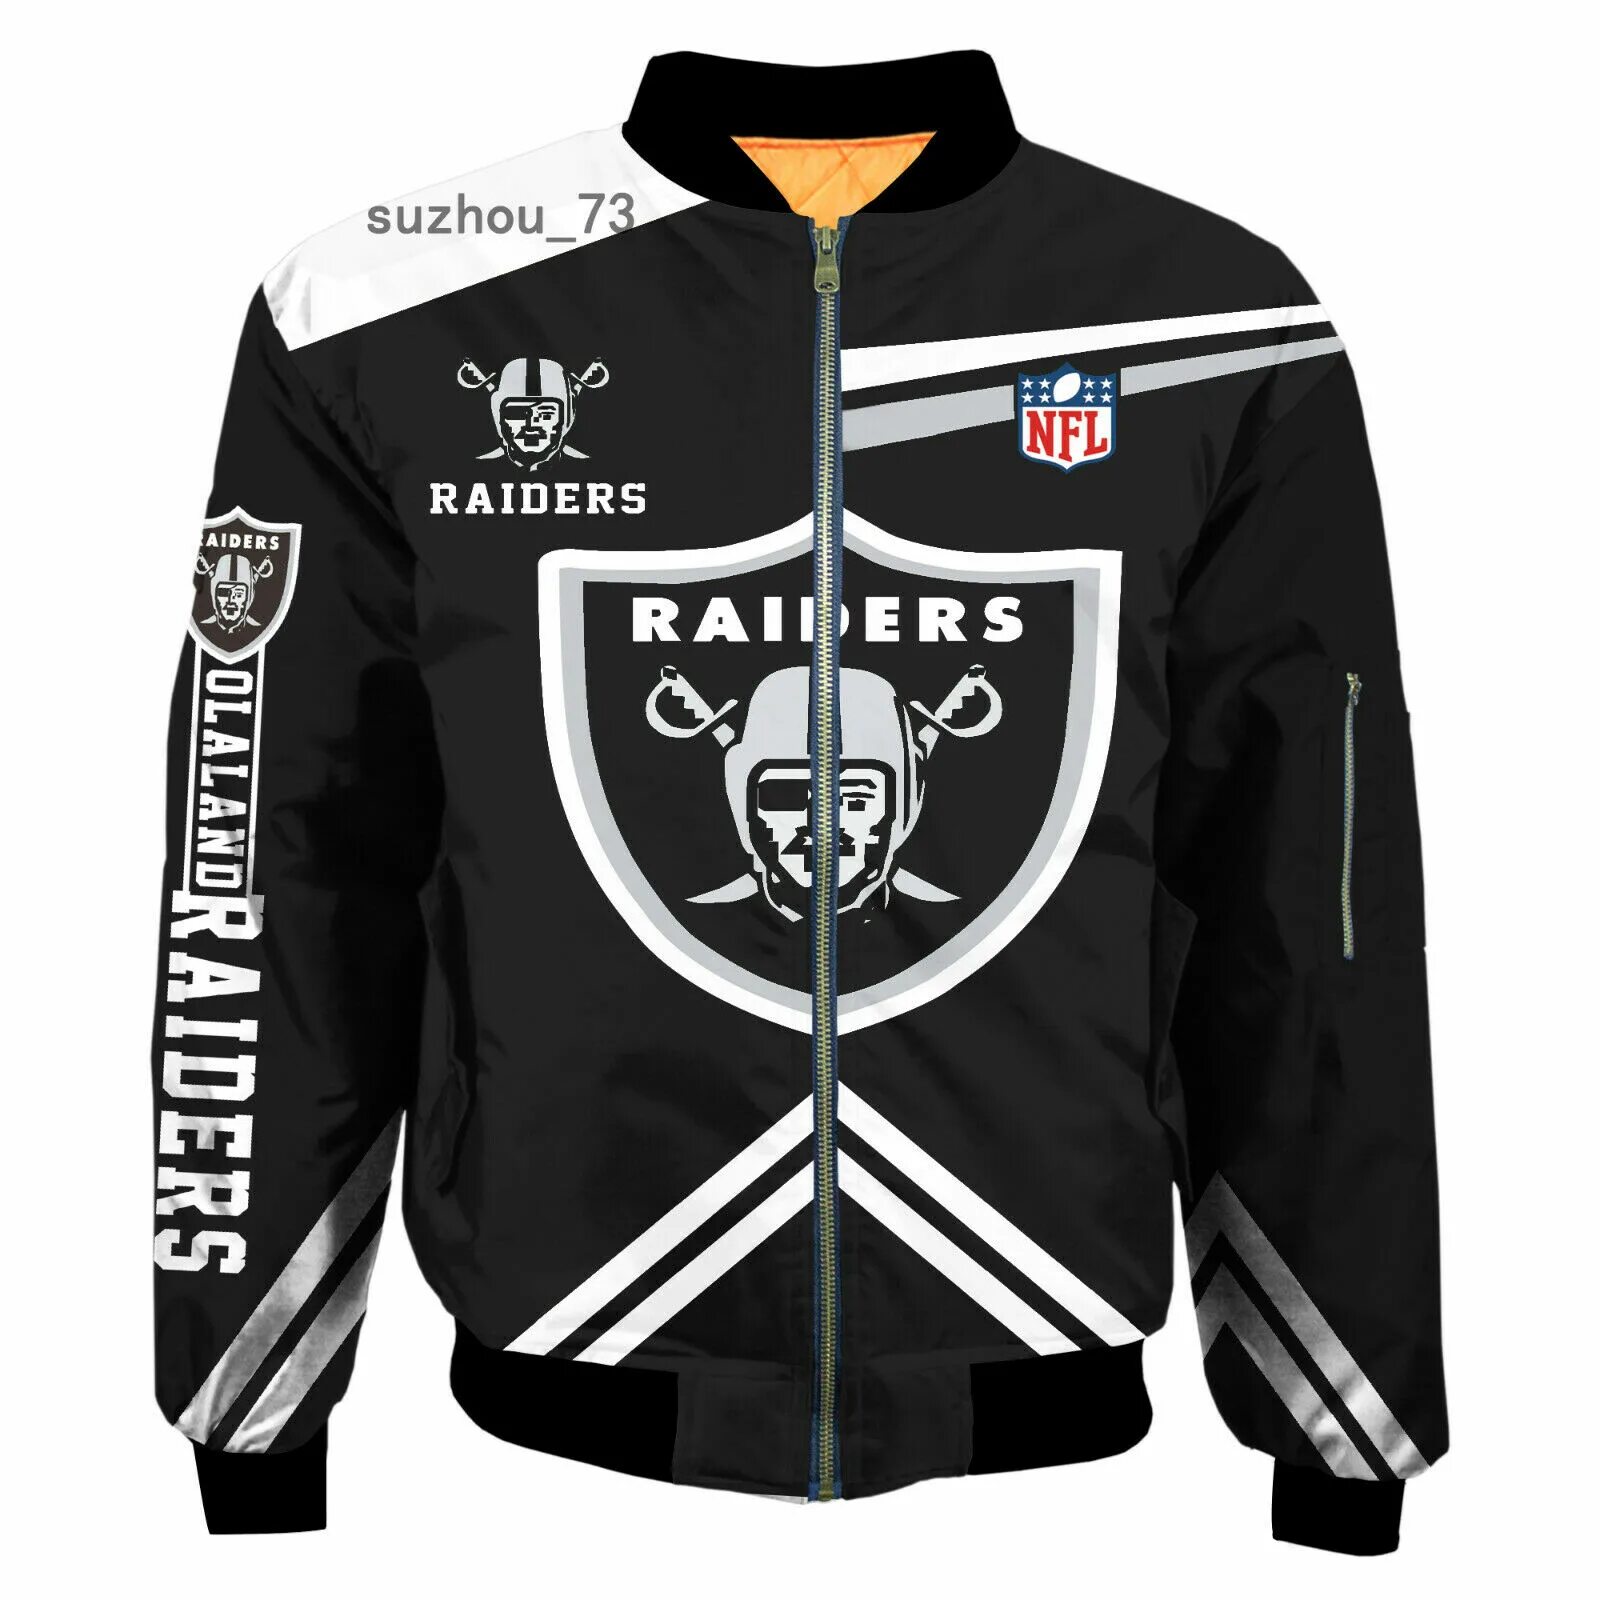 Купить клубную куртку мужскую. Куртка бомбер NFL Raiders. Куртка New era Oakland Raiders. Raiders NFL куртка. Бомбер Окленд рэйдерс.